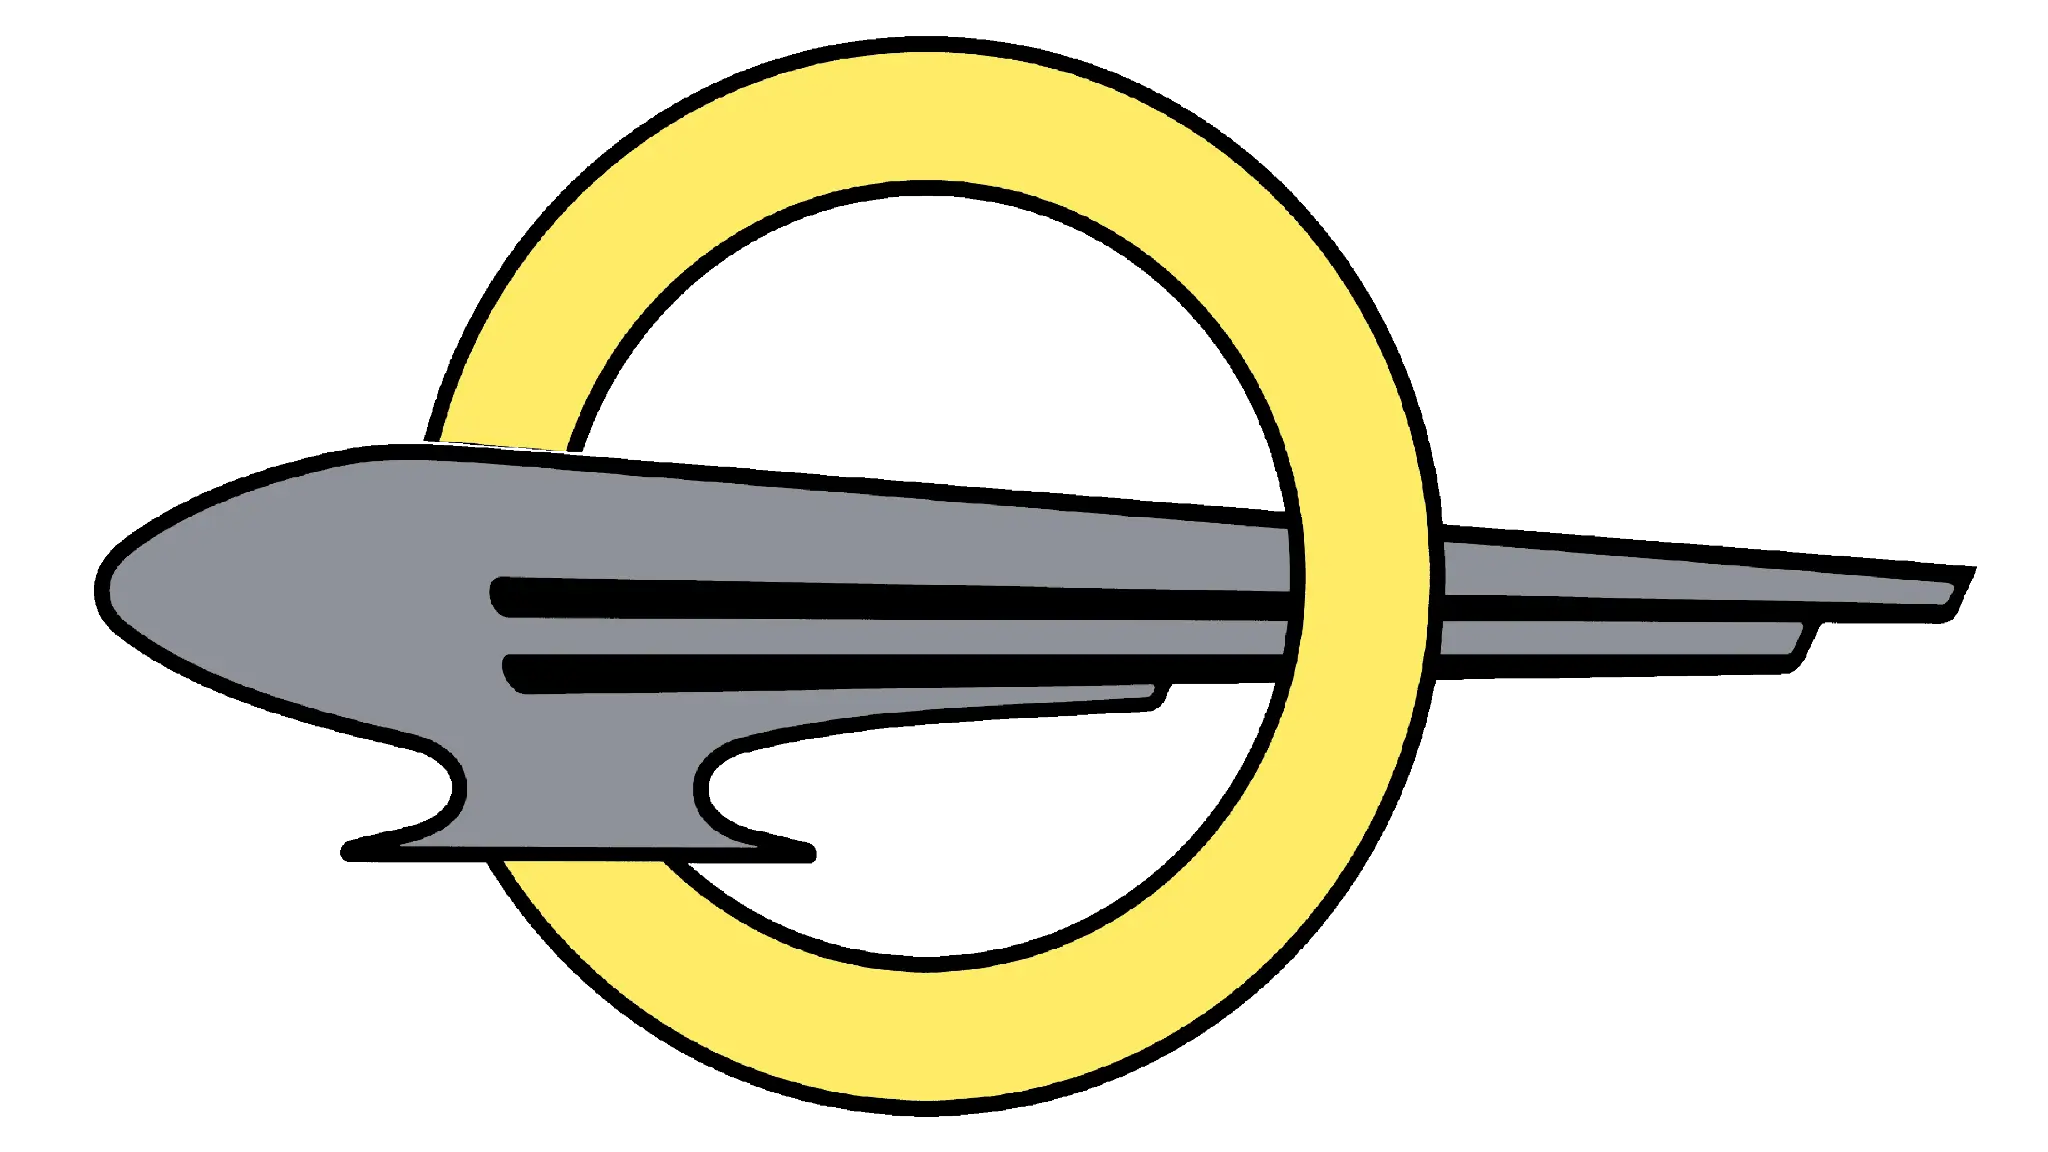 Opel logotipo 1937-1947 circulo com relâmpago preto no meio